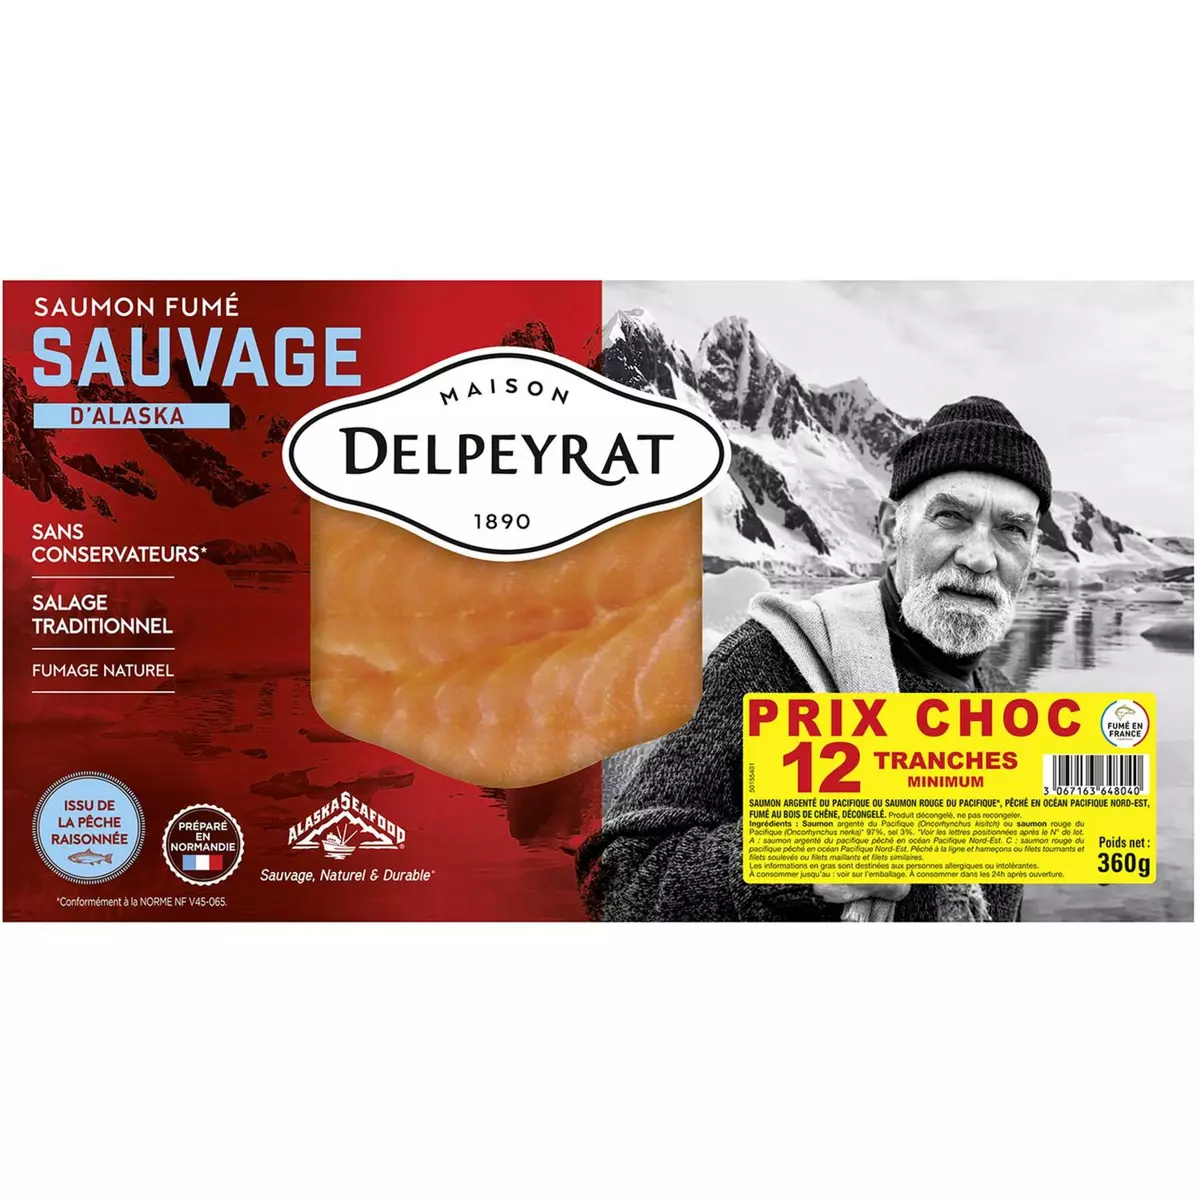 DELPEYRAT Le Saumon fumé sauvage d'Alaska 12 tranches 360g